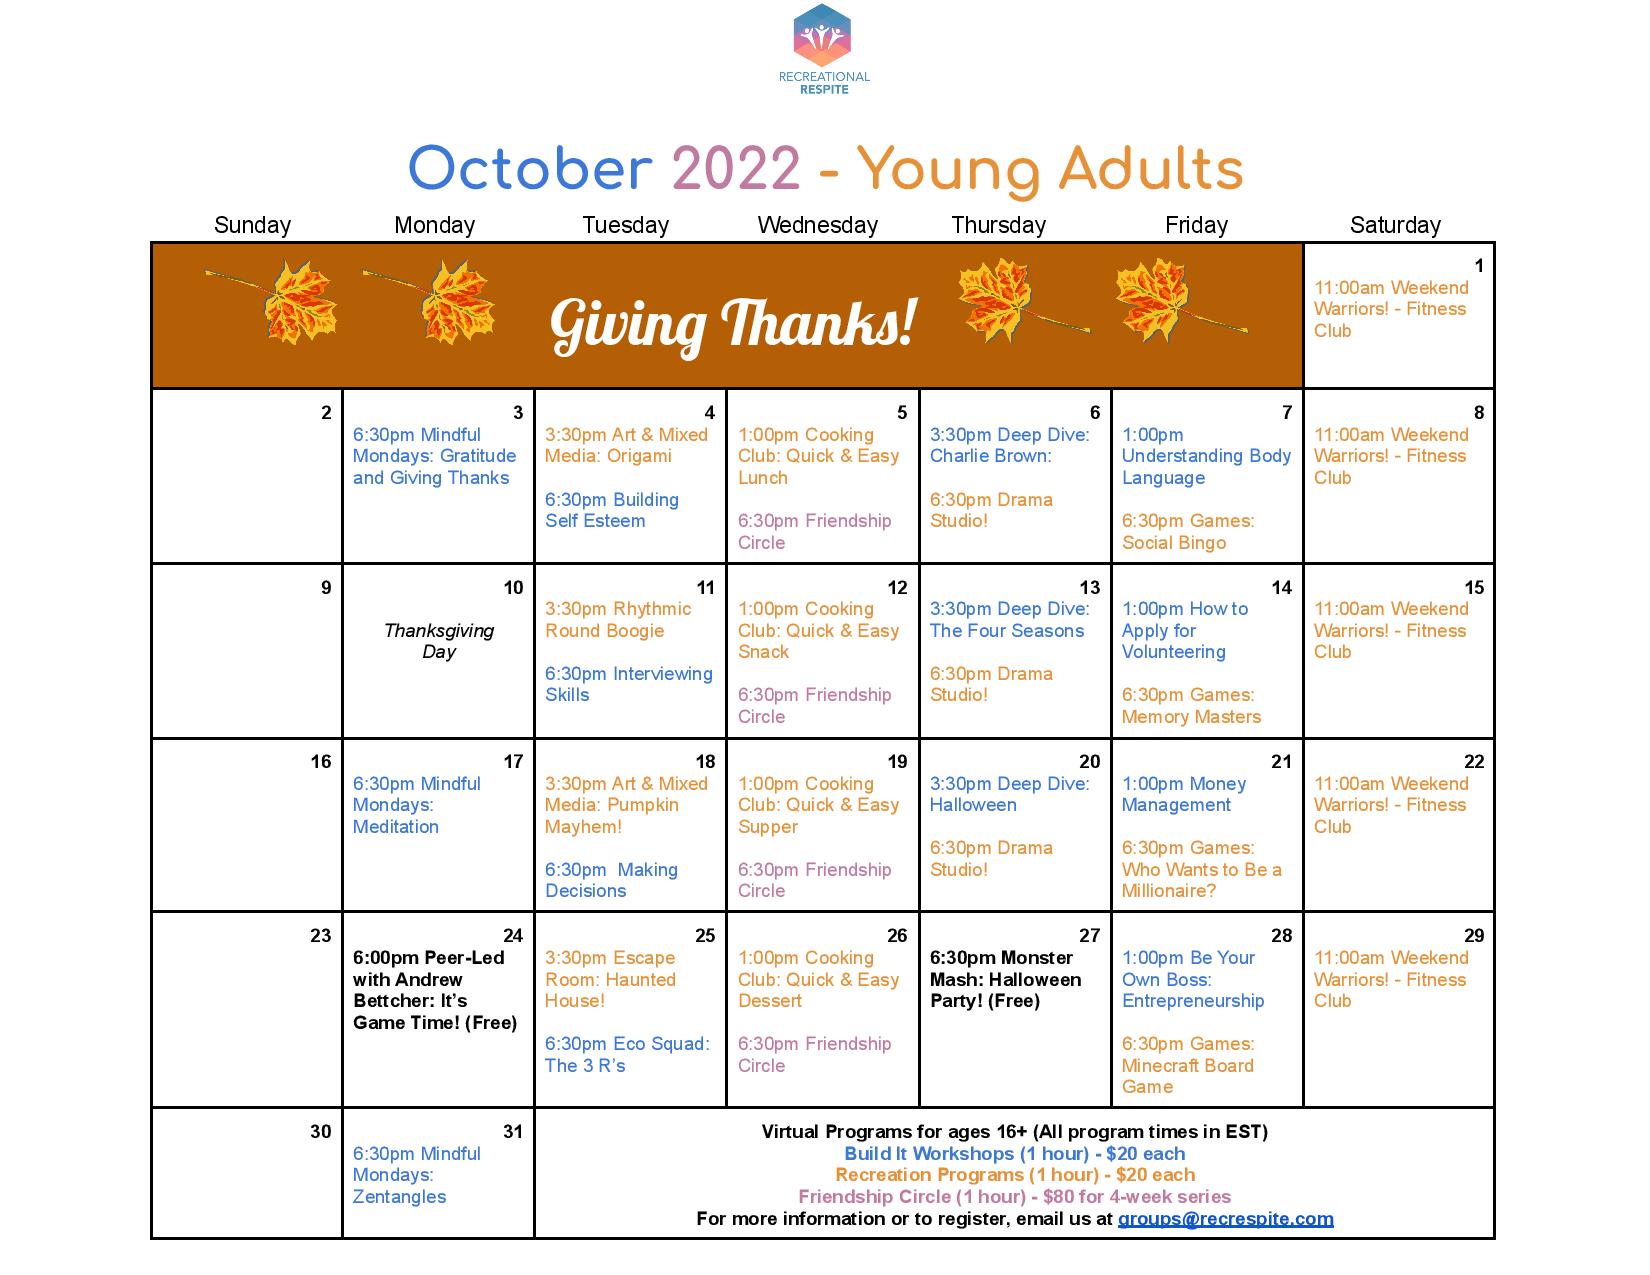 Calendar of October program offerings. For a full list, please email info@recrespite.com